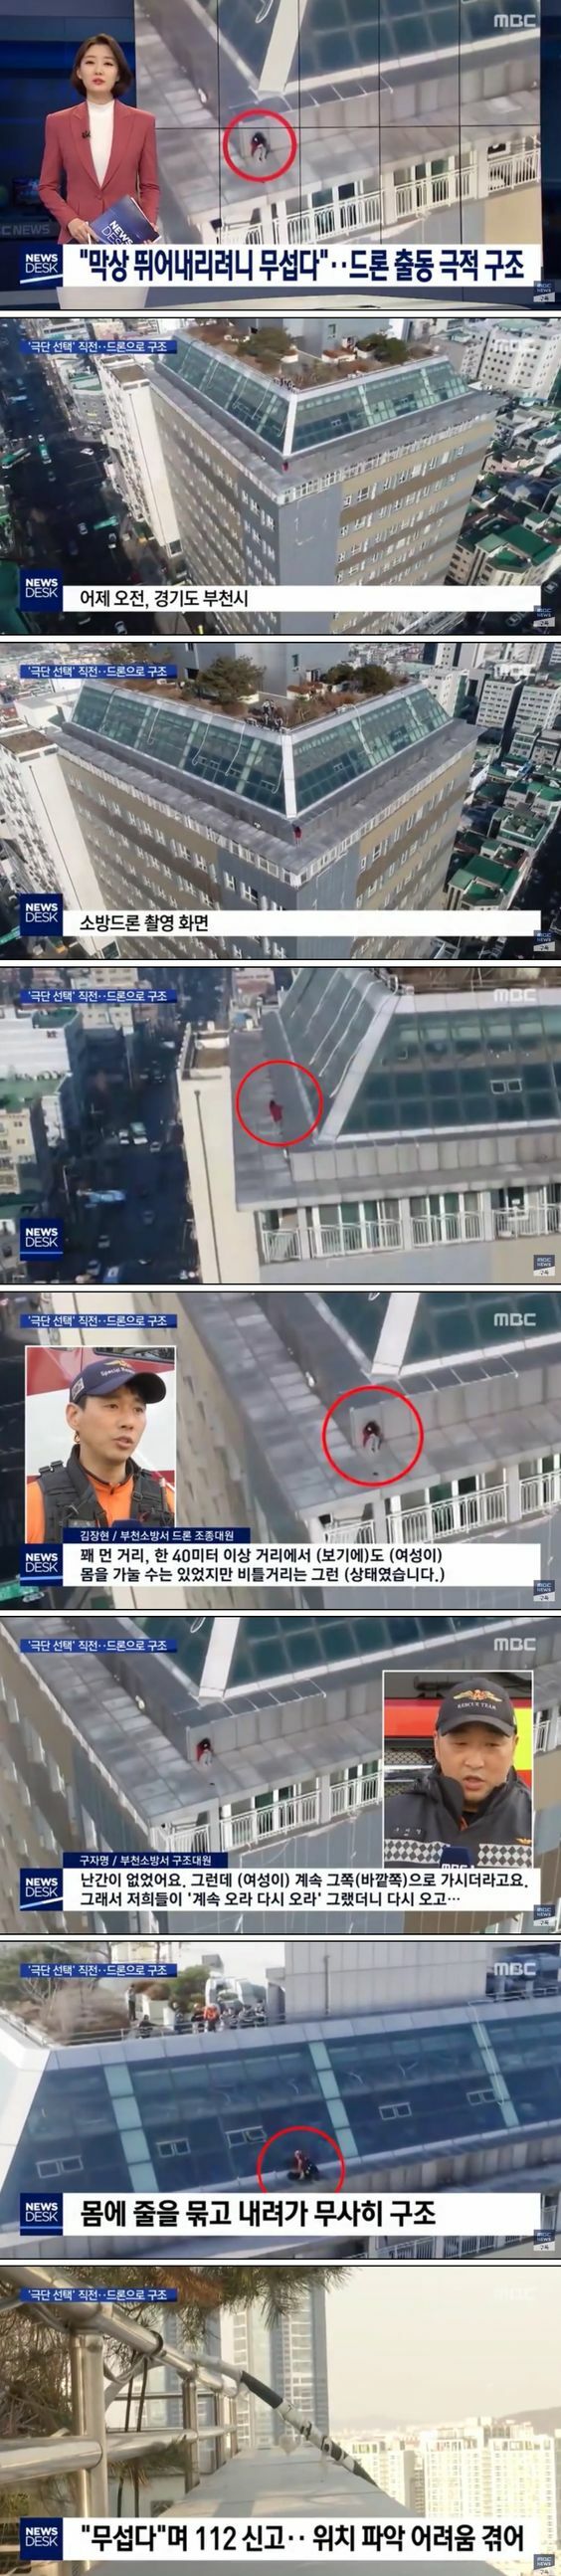 건물 옥상에 자살하려던 여성의 최후